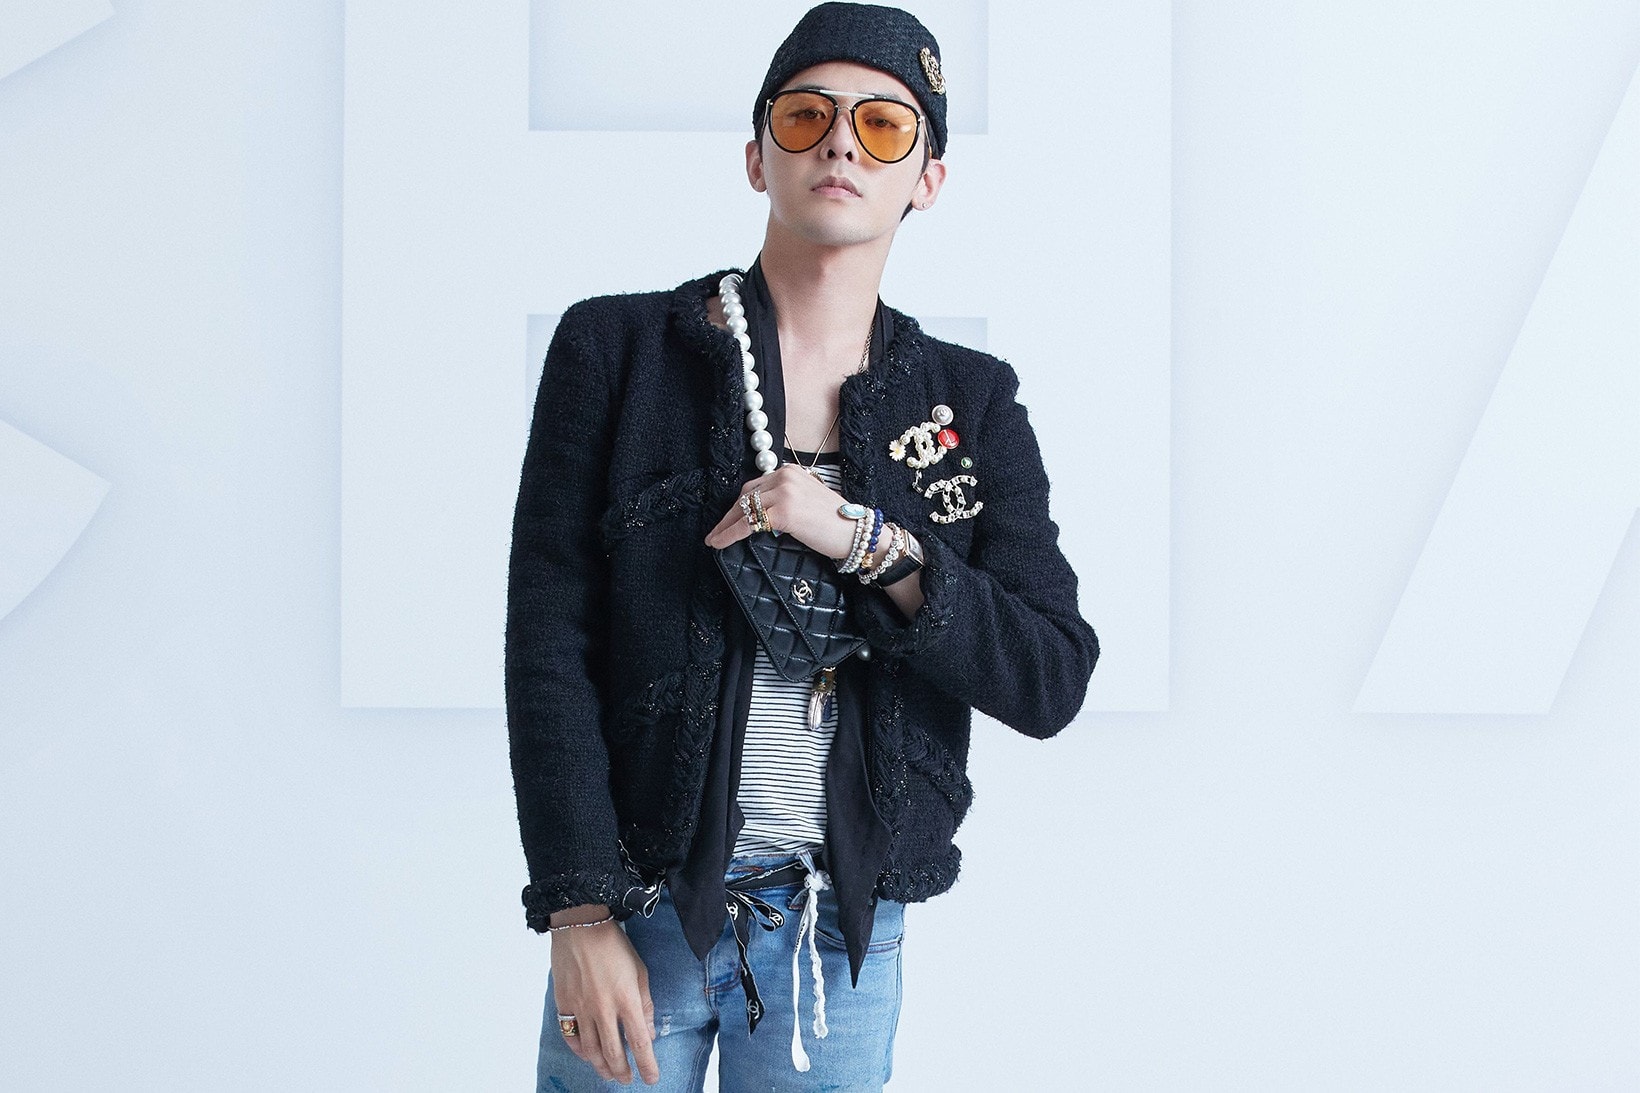 g-dragon solo comeback announcement yg entertainment music album release k-pop